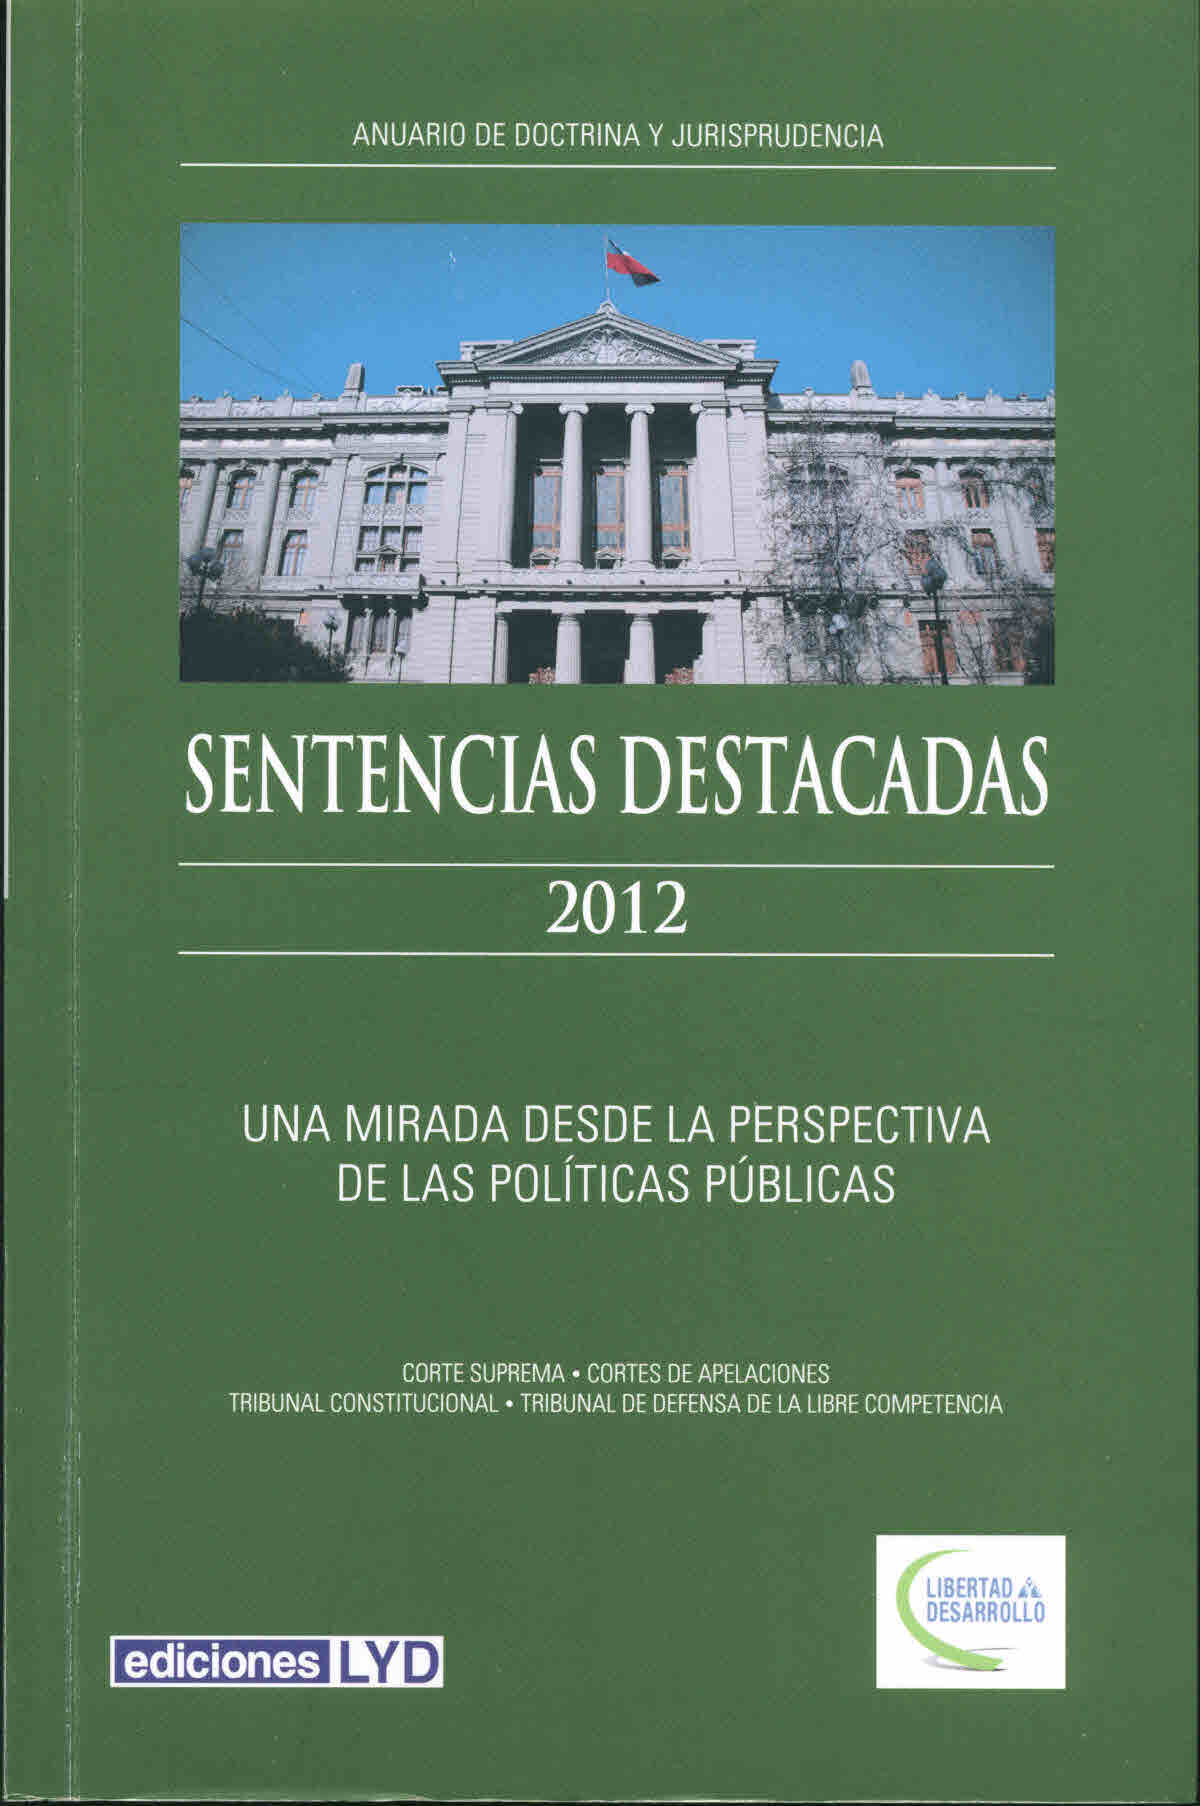 Sentencias destacadas 2012 : una mirada desde la perspectiva de las políticas públicas